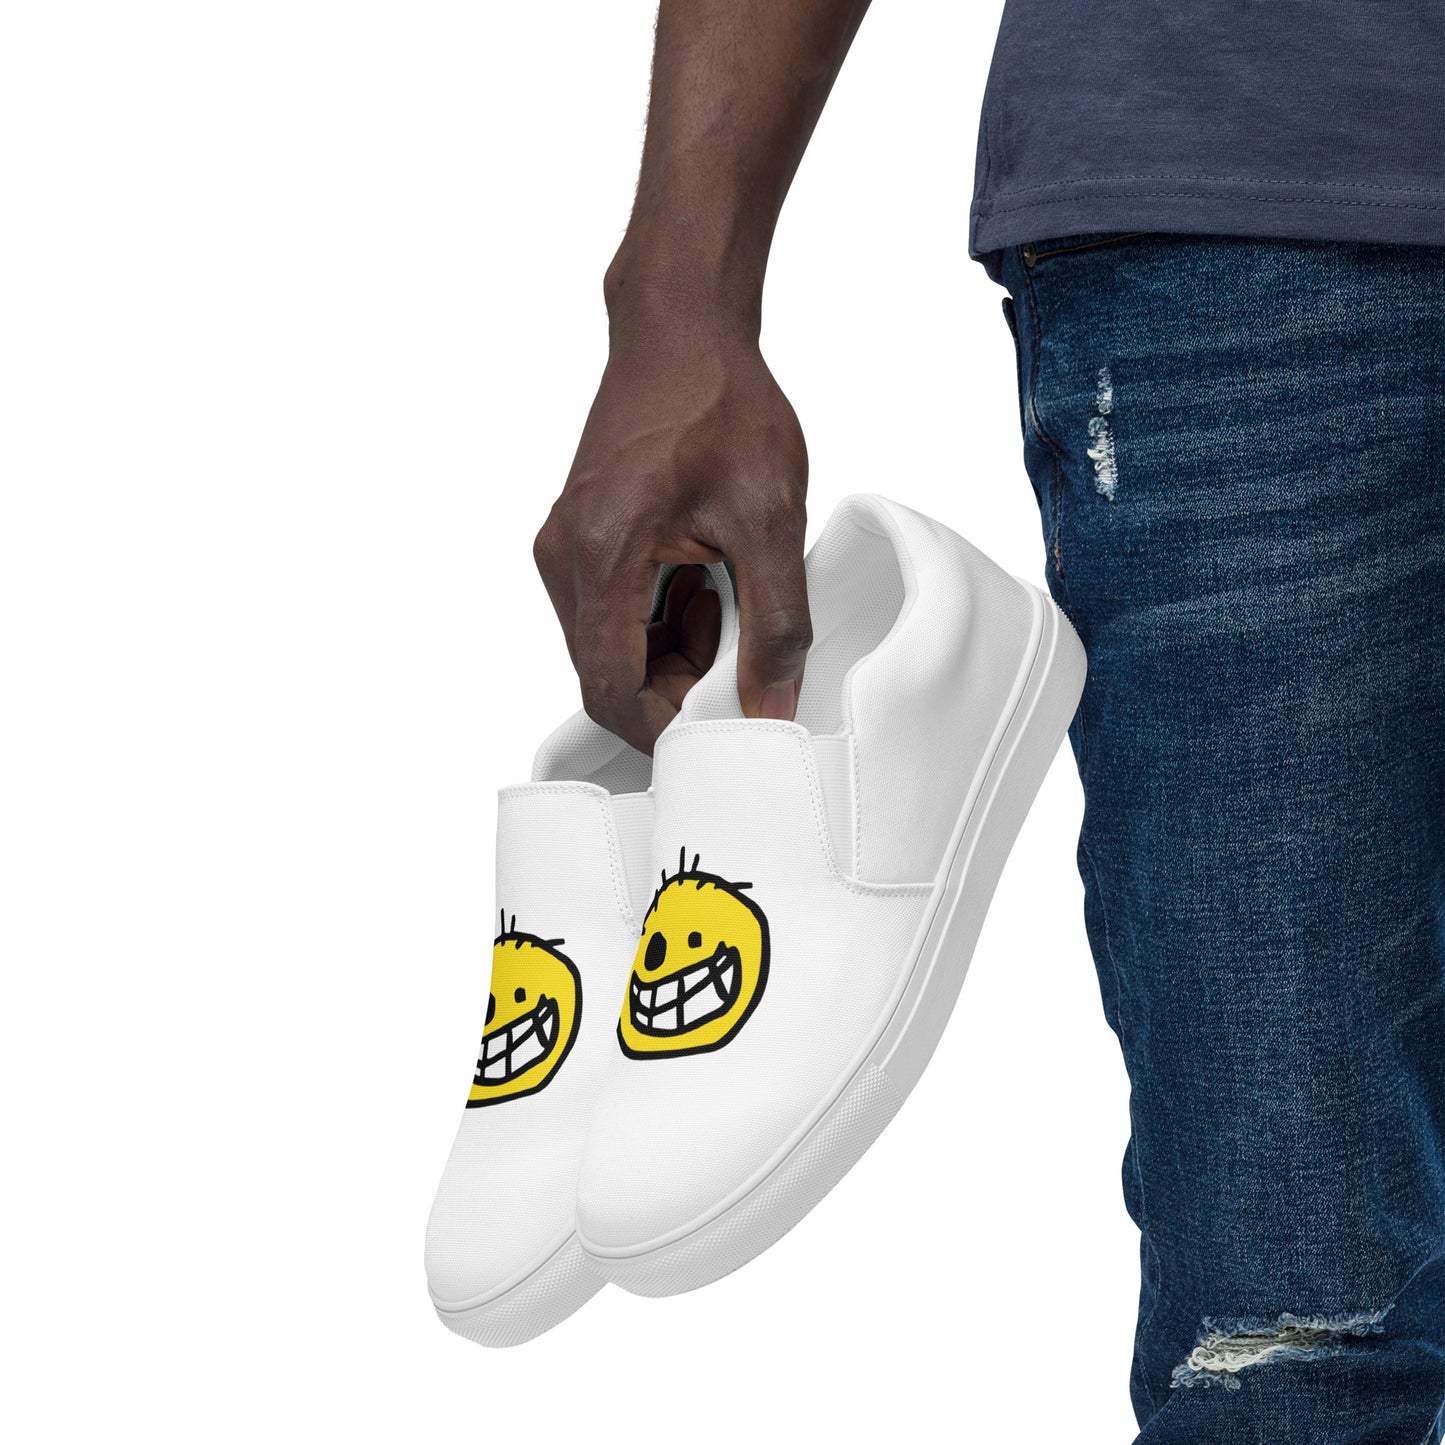 Black Eyed Joe Printed Slip On Sneakers - Untested